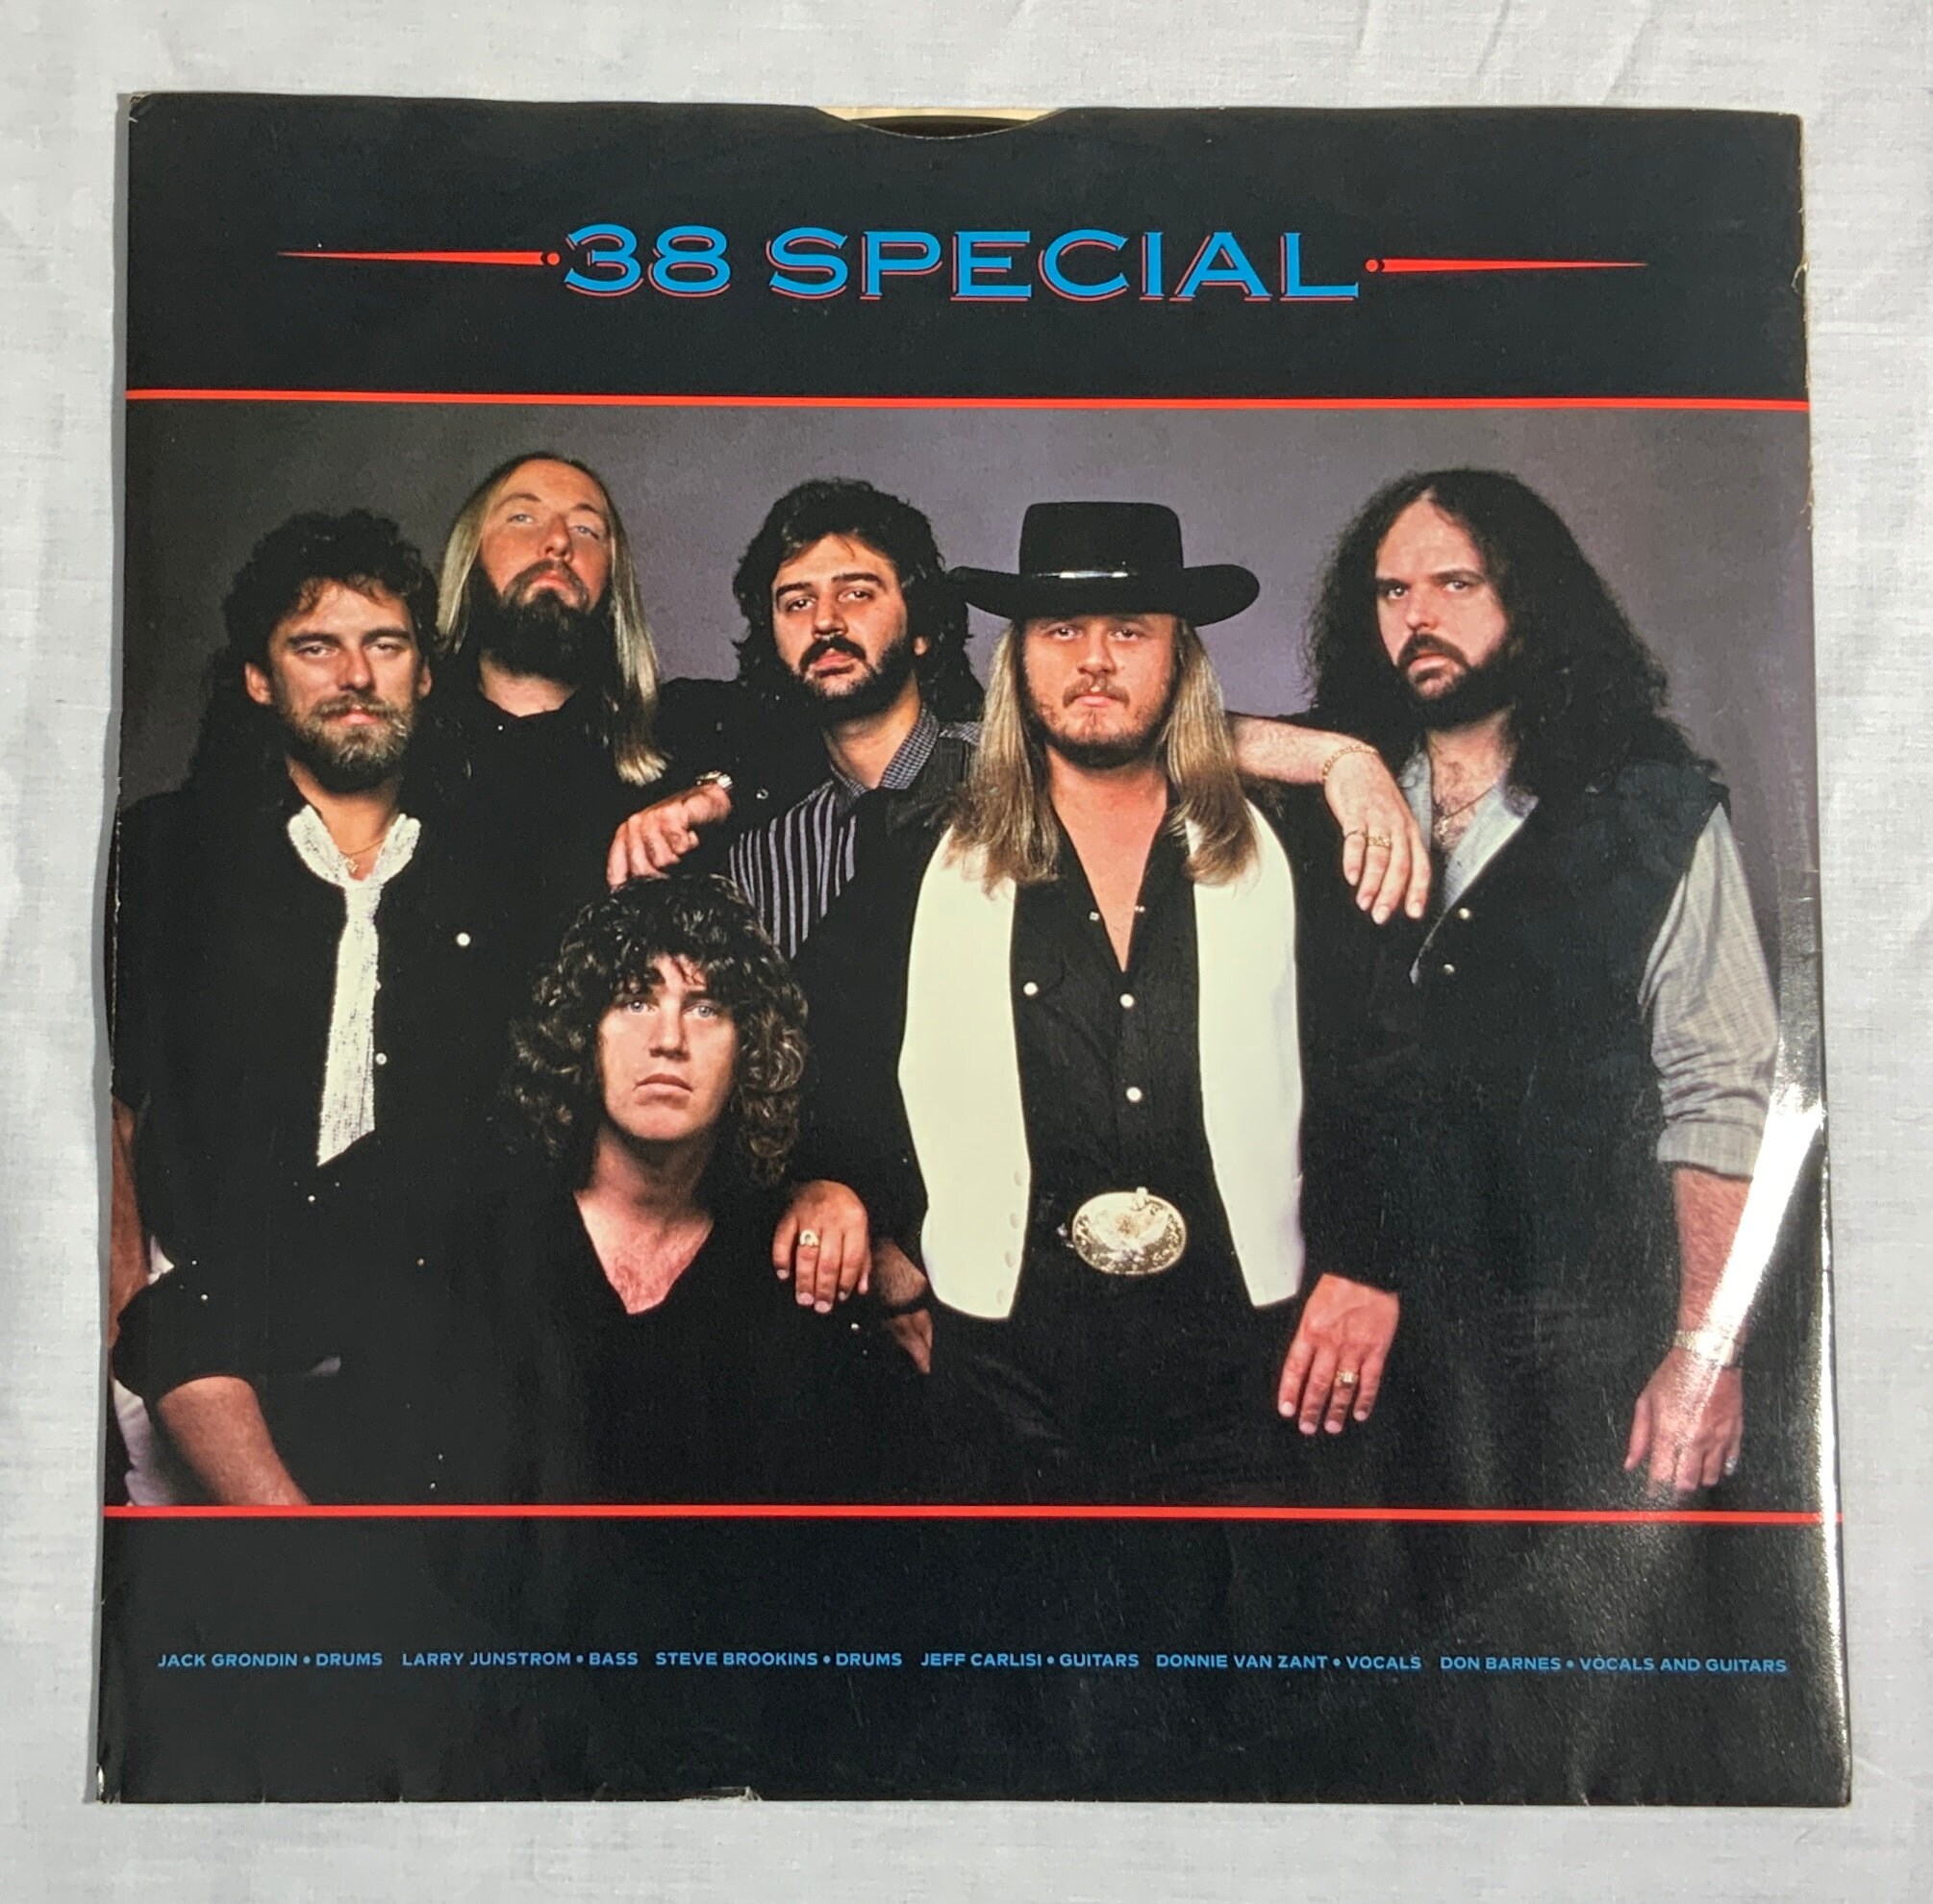 38 special tour de force vinyl